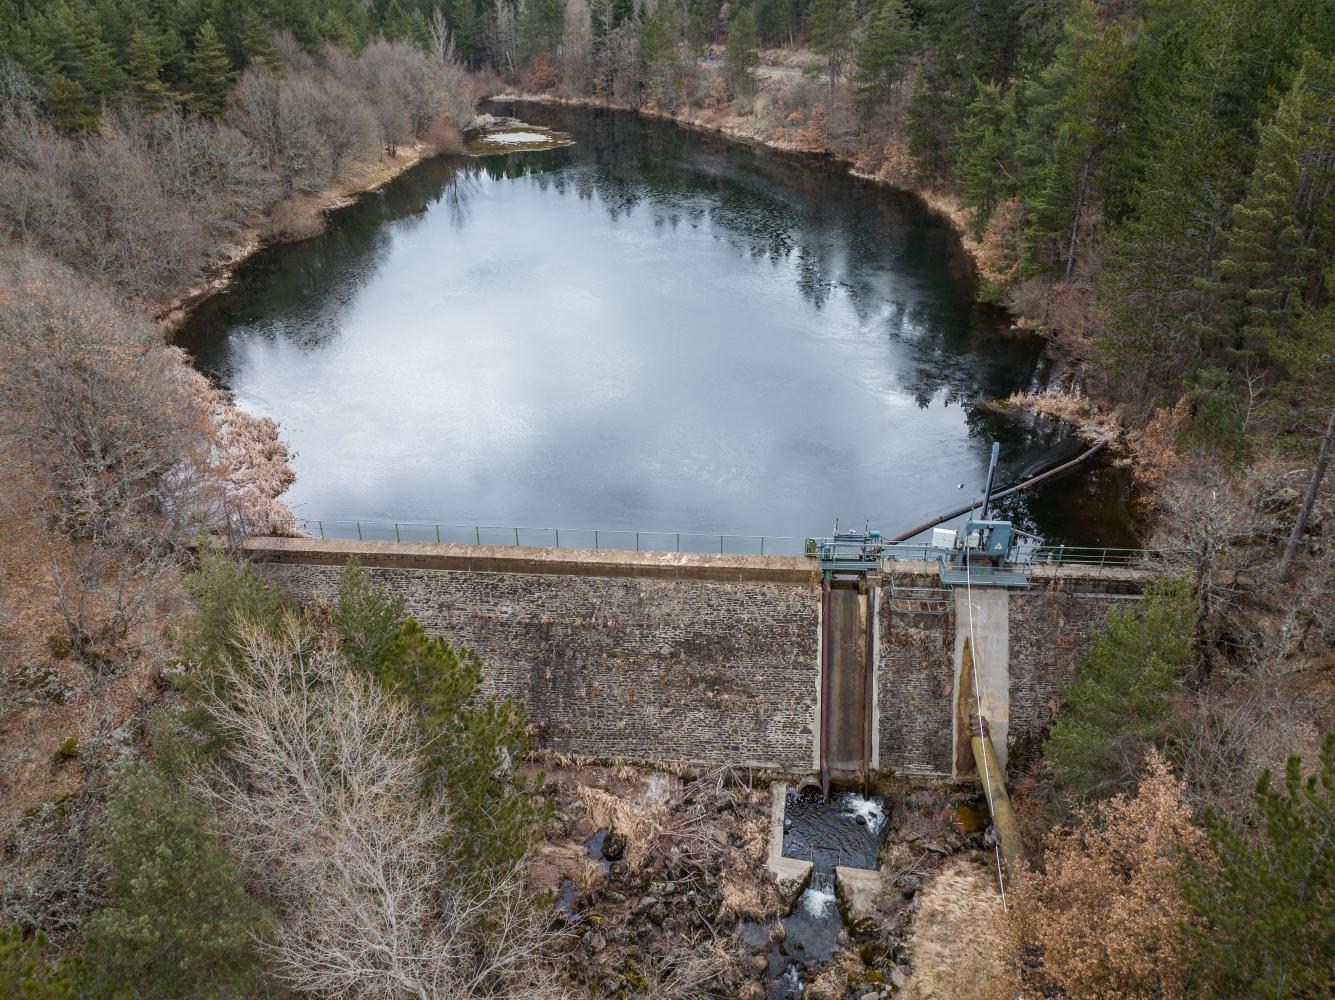 Vente d'une centrale hydroélectrique avec un lac